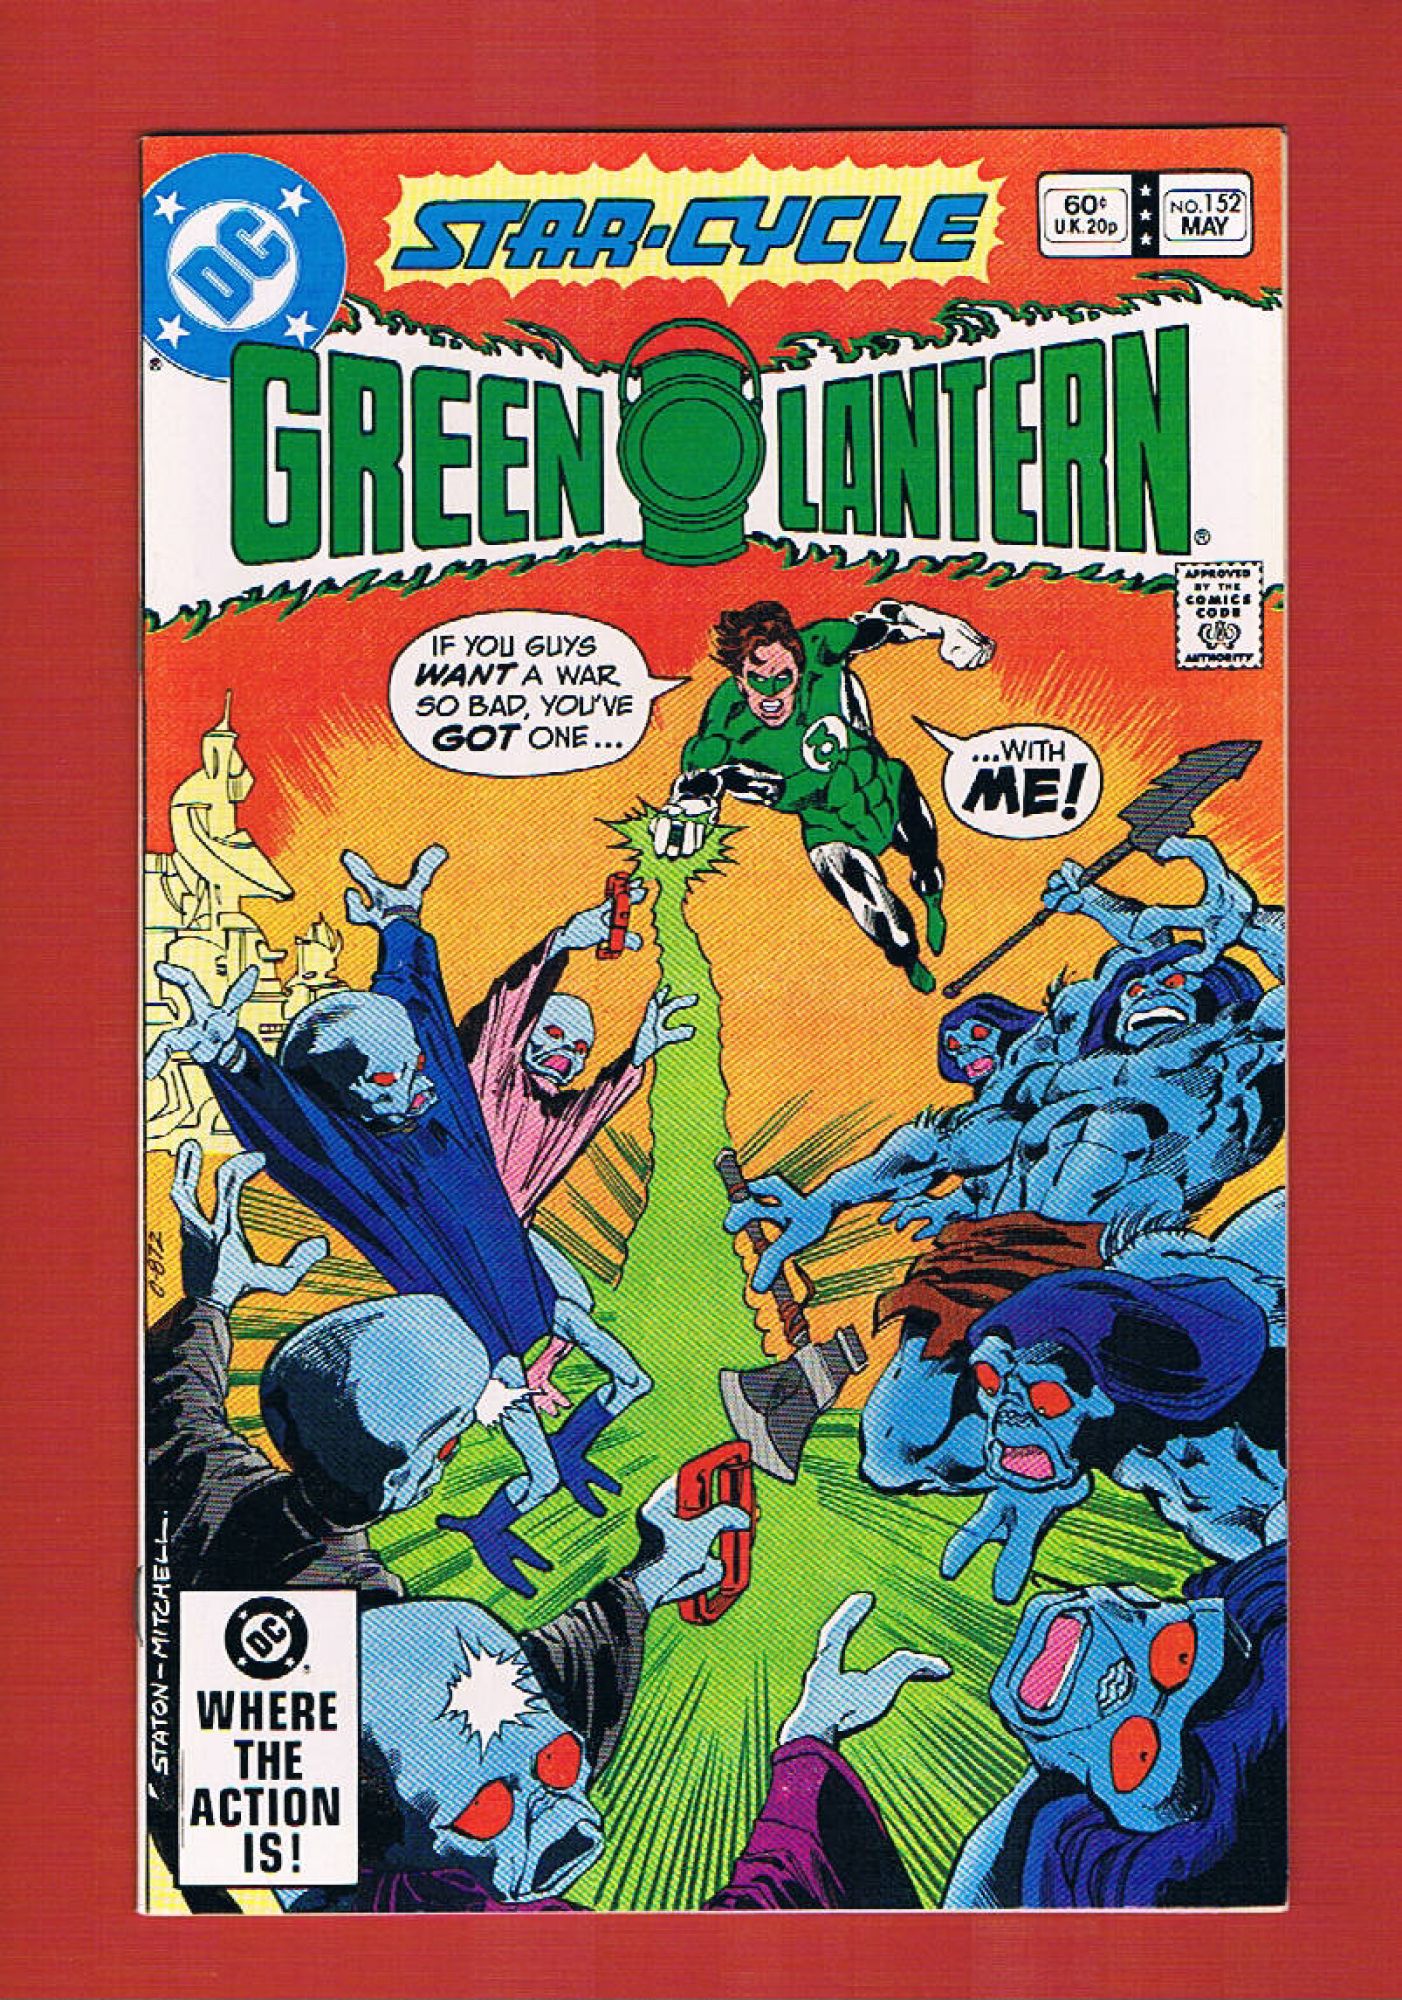 Green Lantern #152, May 1982, 9.2 NM-